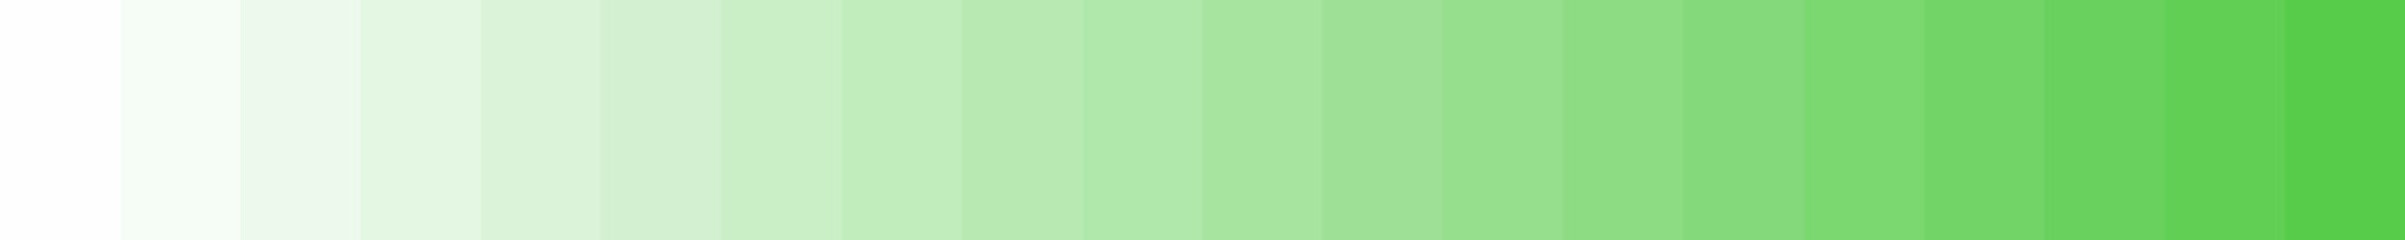 Hintergrund Streifen mit Farbverlauf: grün